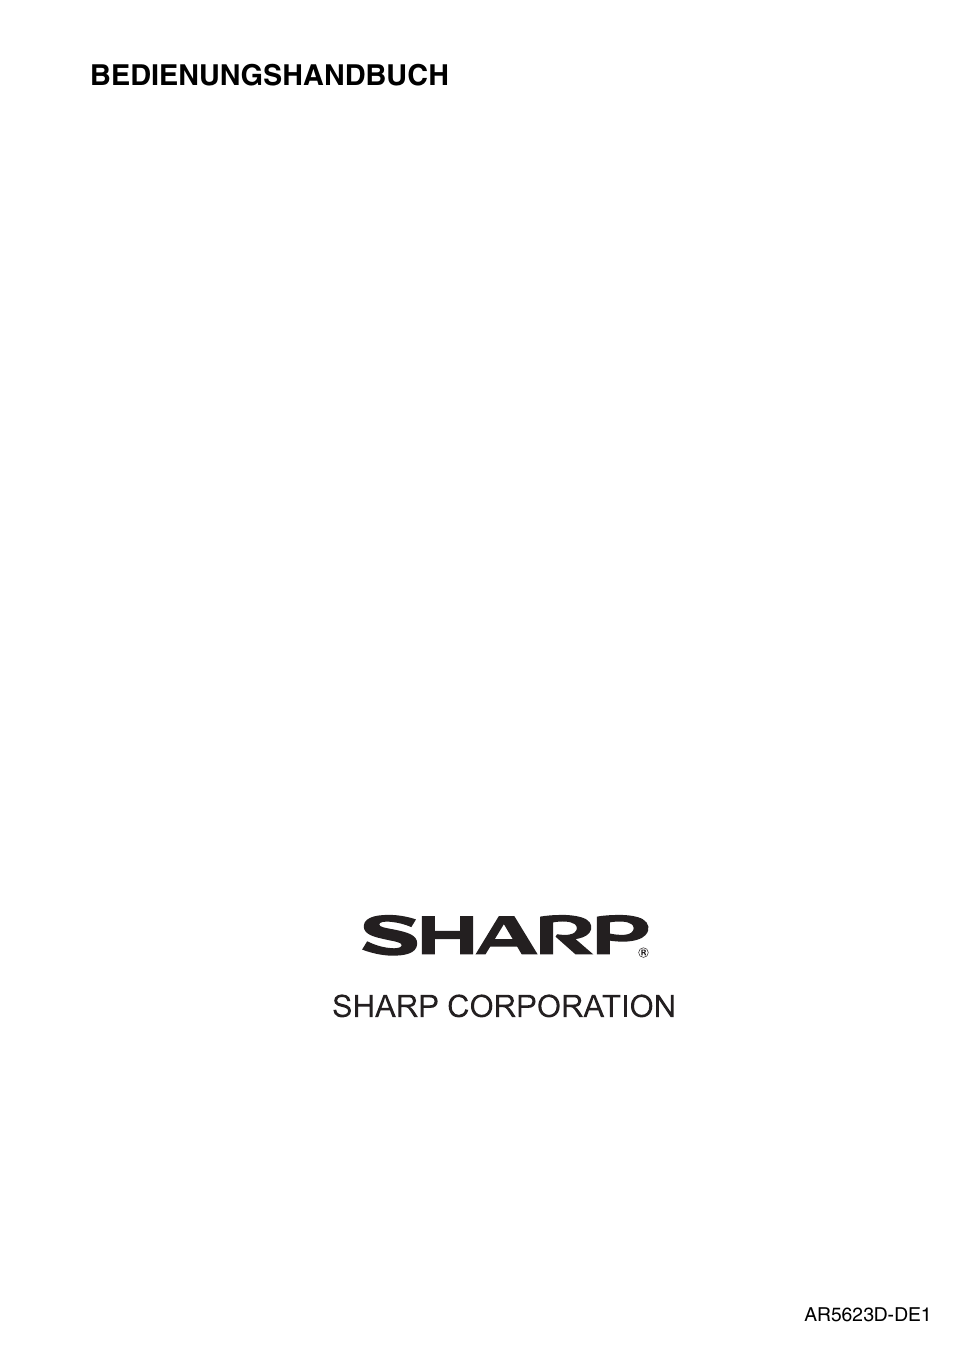 Bedienungshandbuch | Sharp AR-5618 Benutzerhandbuch | Seite 108 / 108